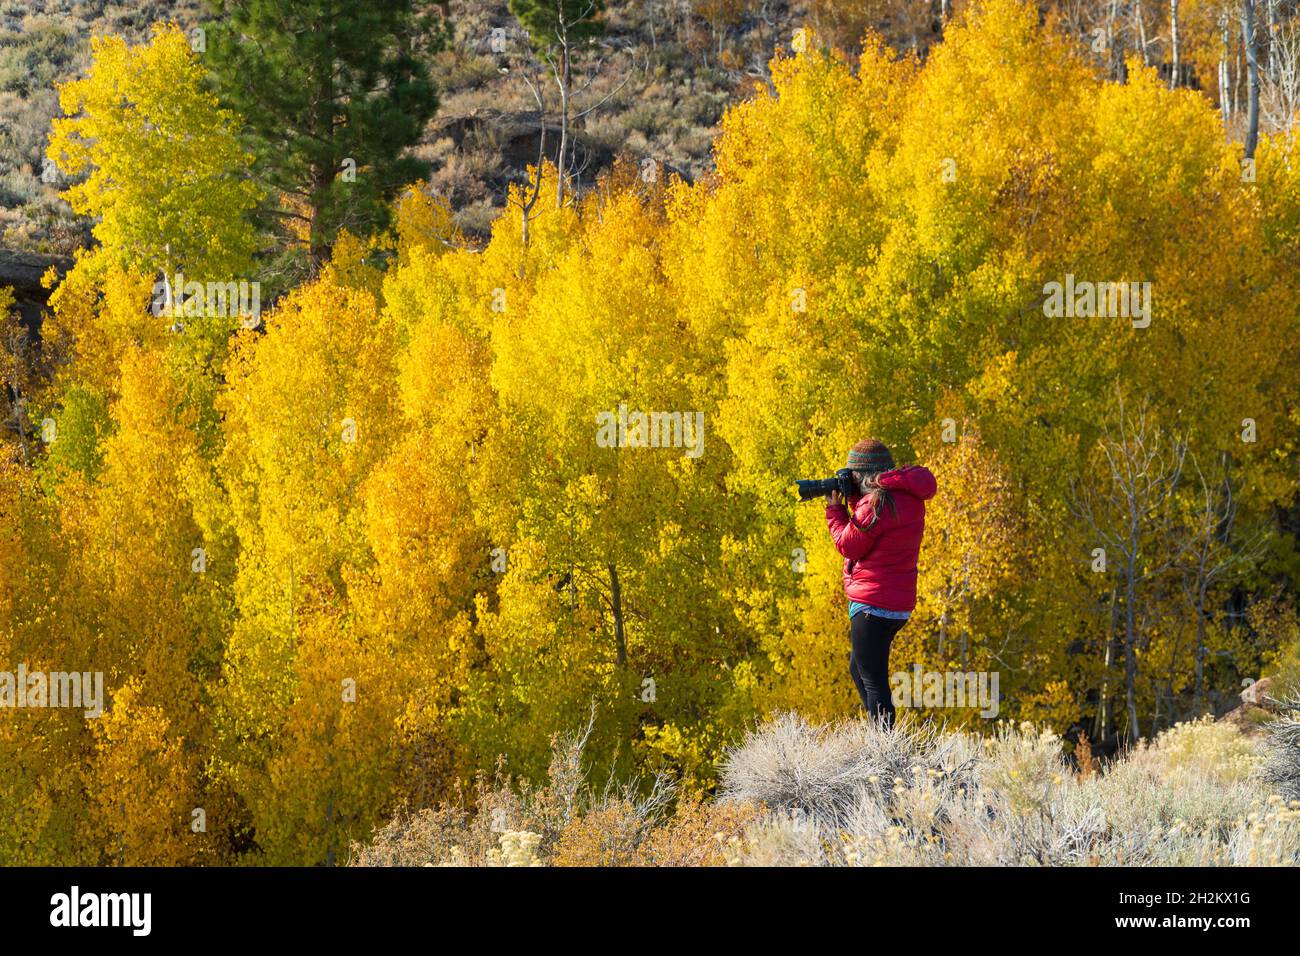 Fotografiar colores de otoño protegidos en barrancos del desierto cerca del Lago Mono. Foto de stock